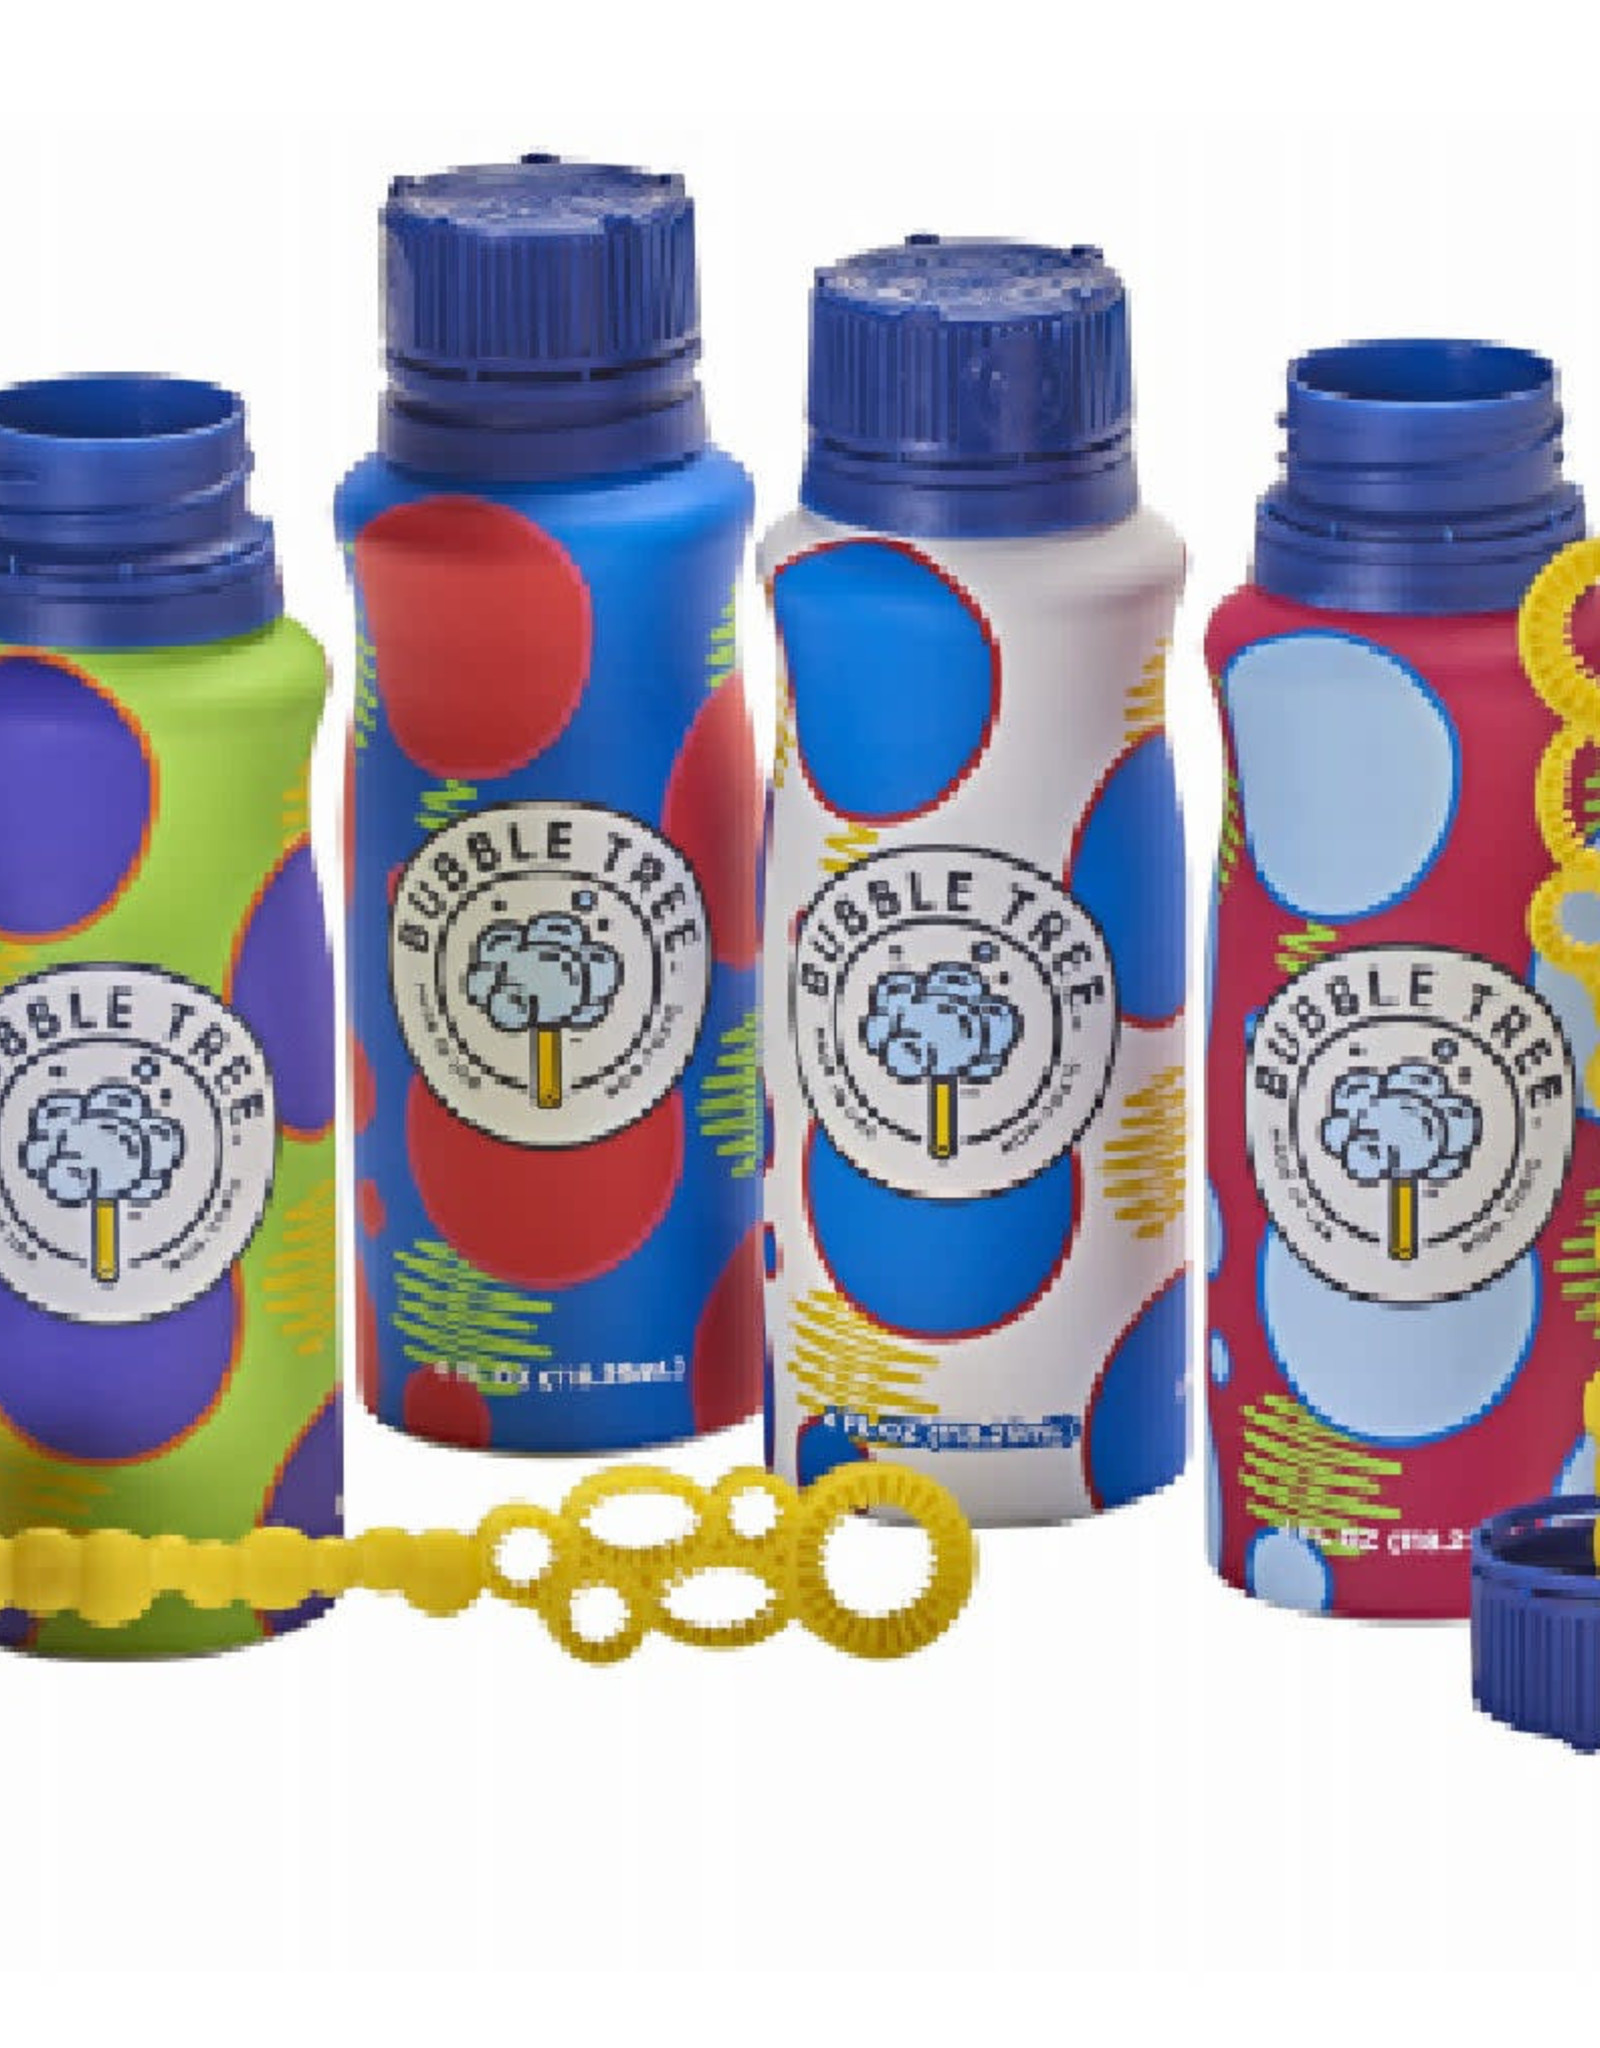 Original Refillable Bubble Tree Bottle 4 oz